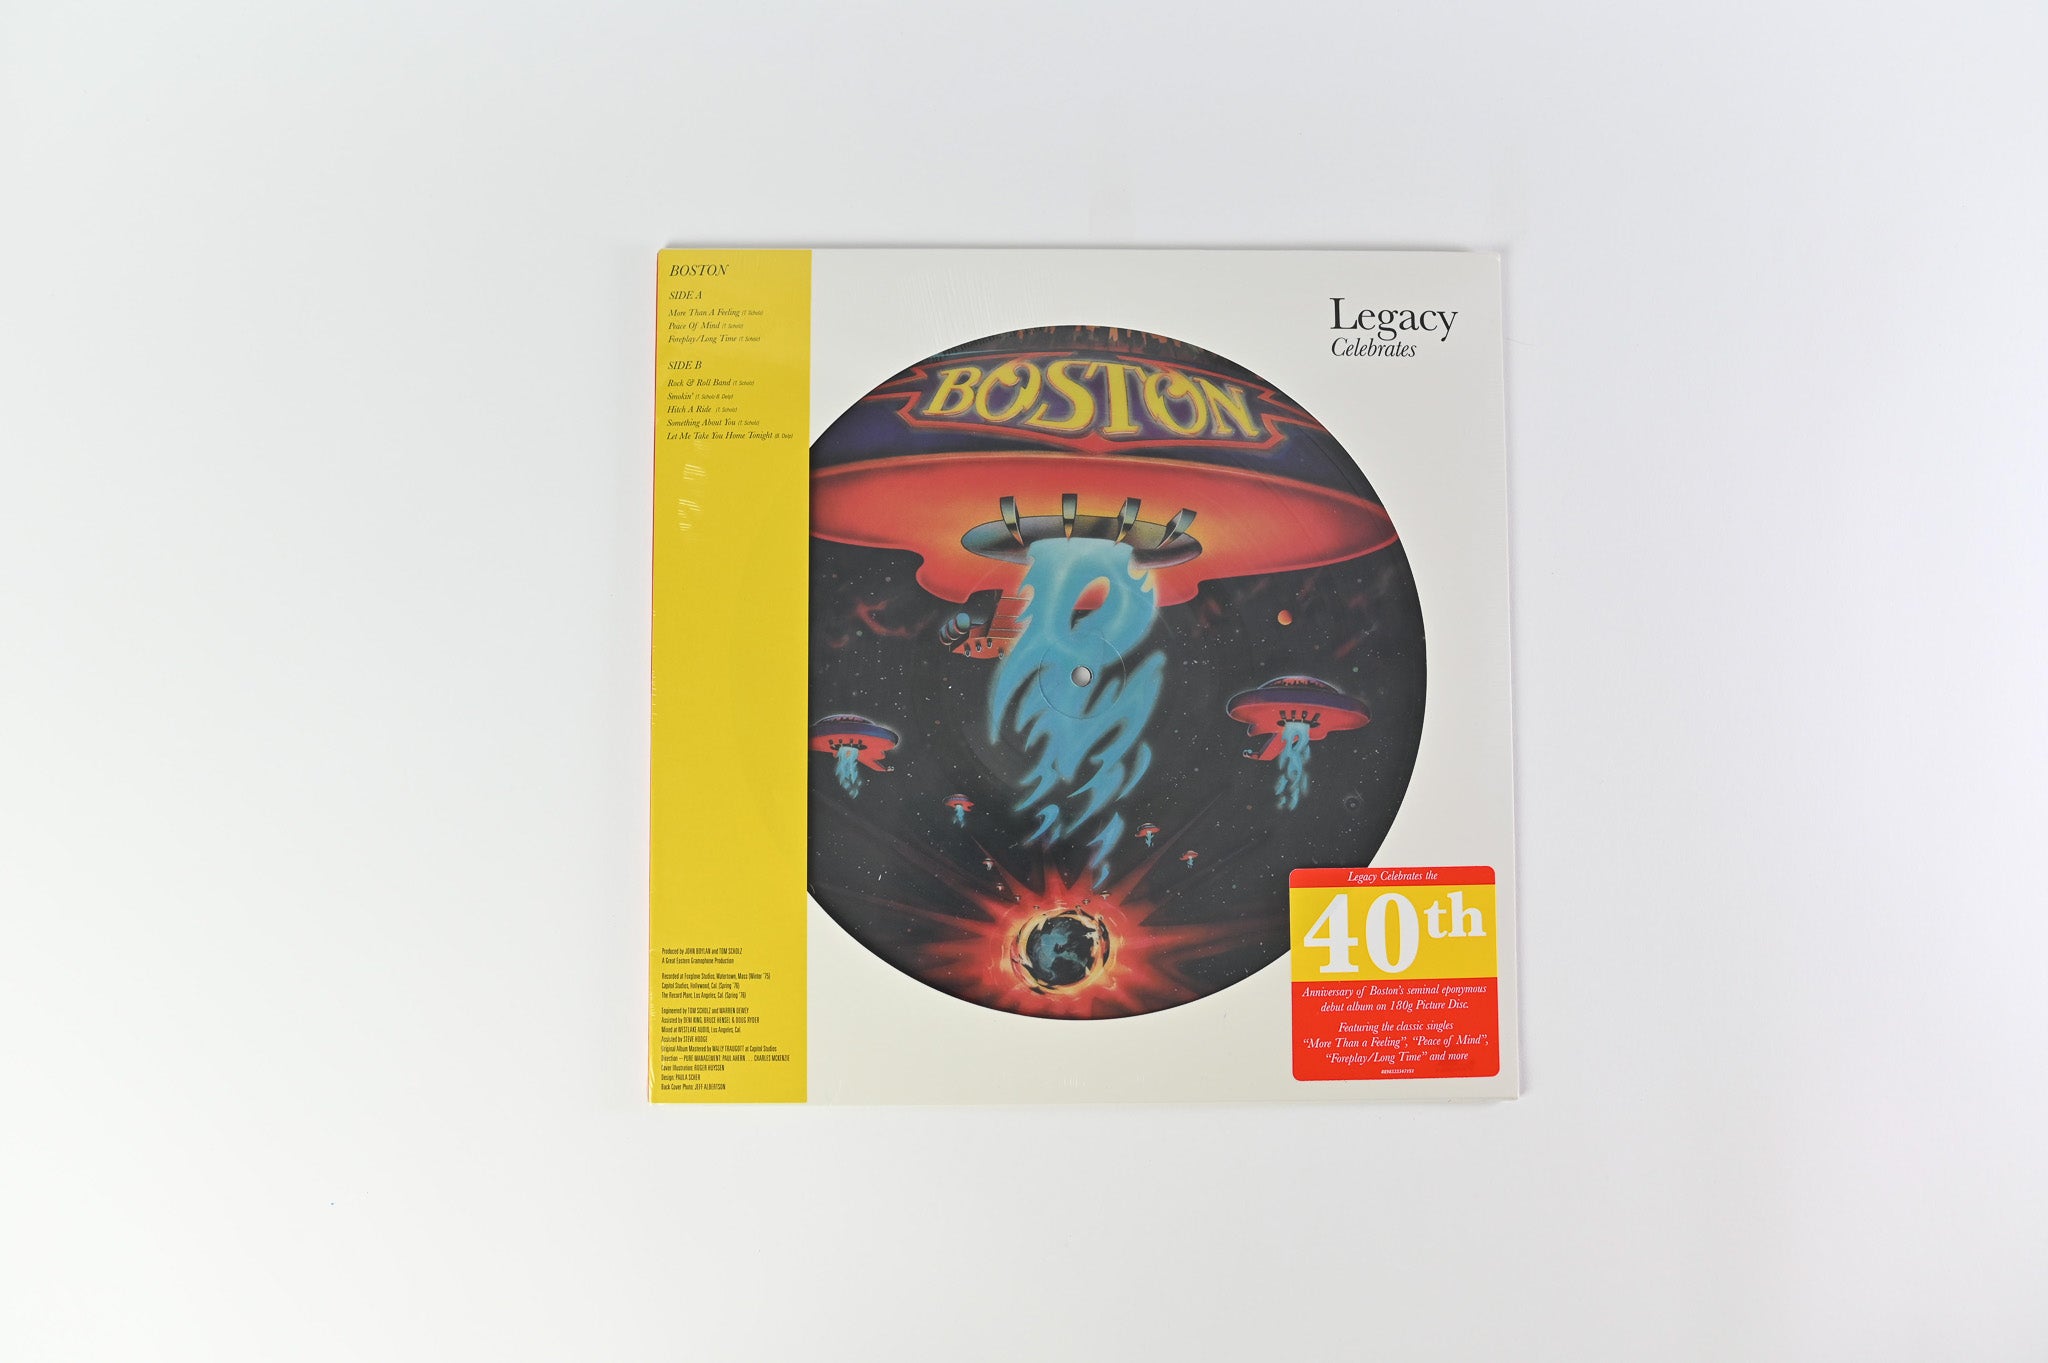 Boston - Boston SEALED Reissue Picture Disc on Legacy